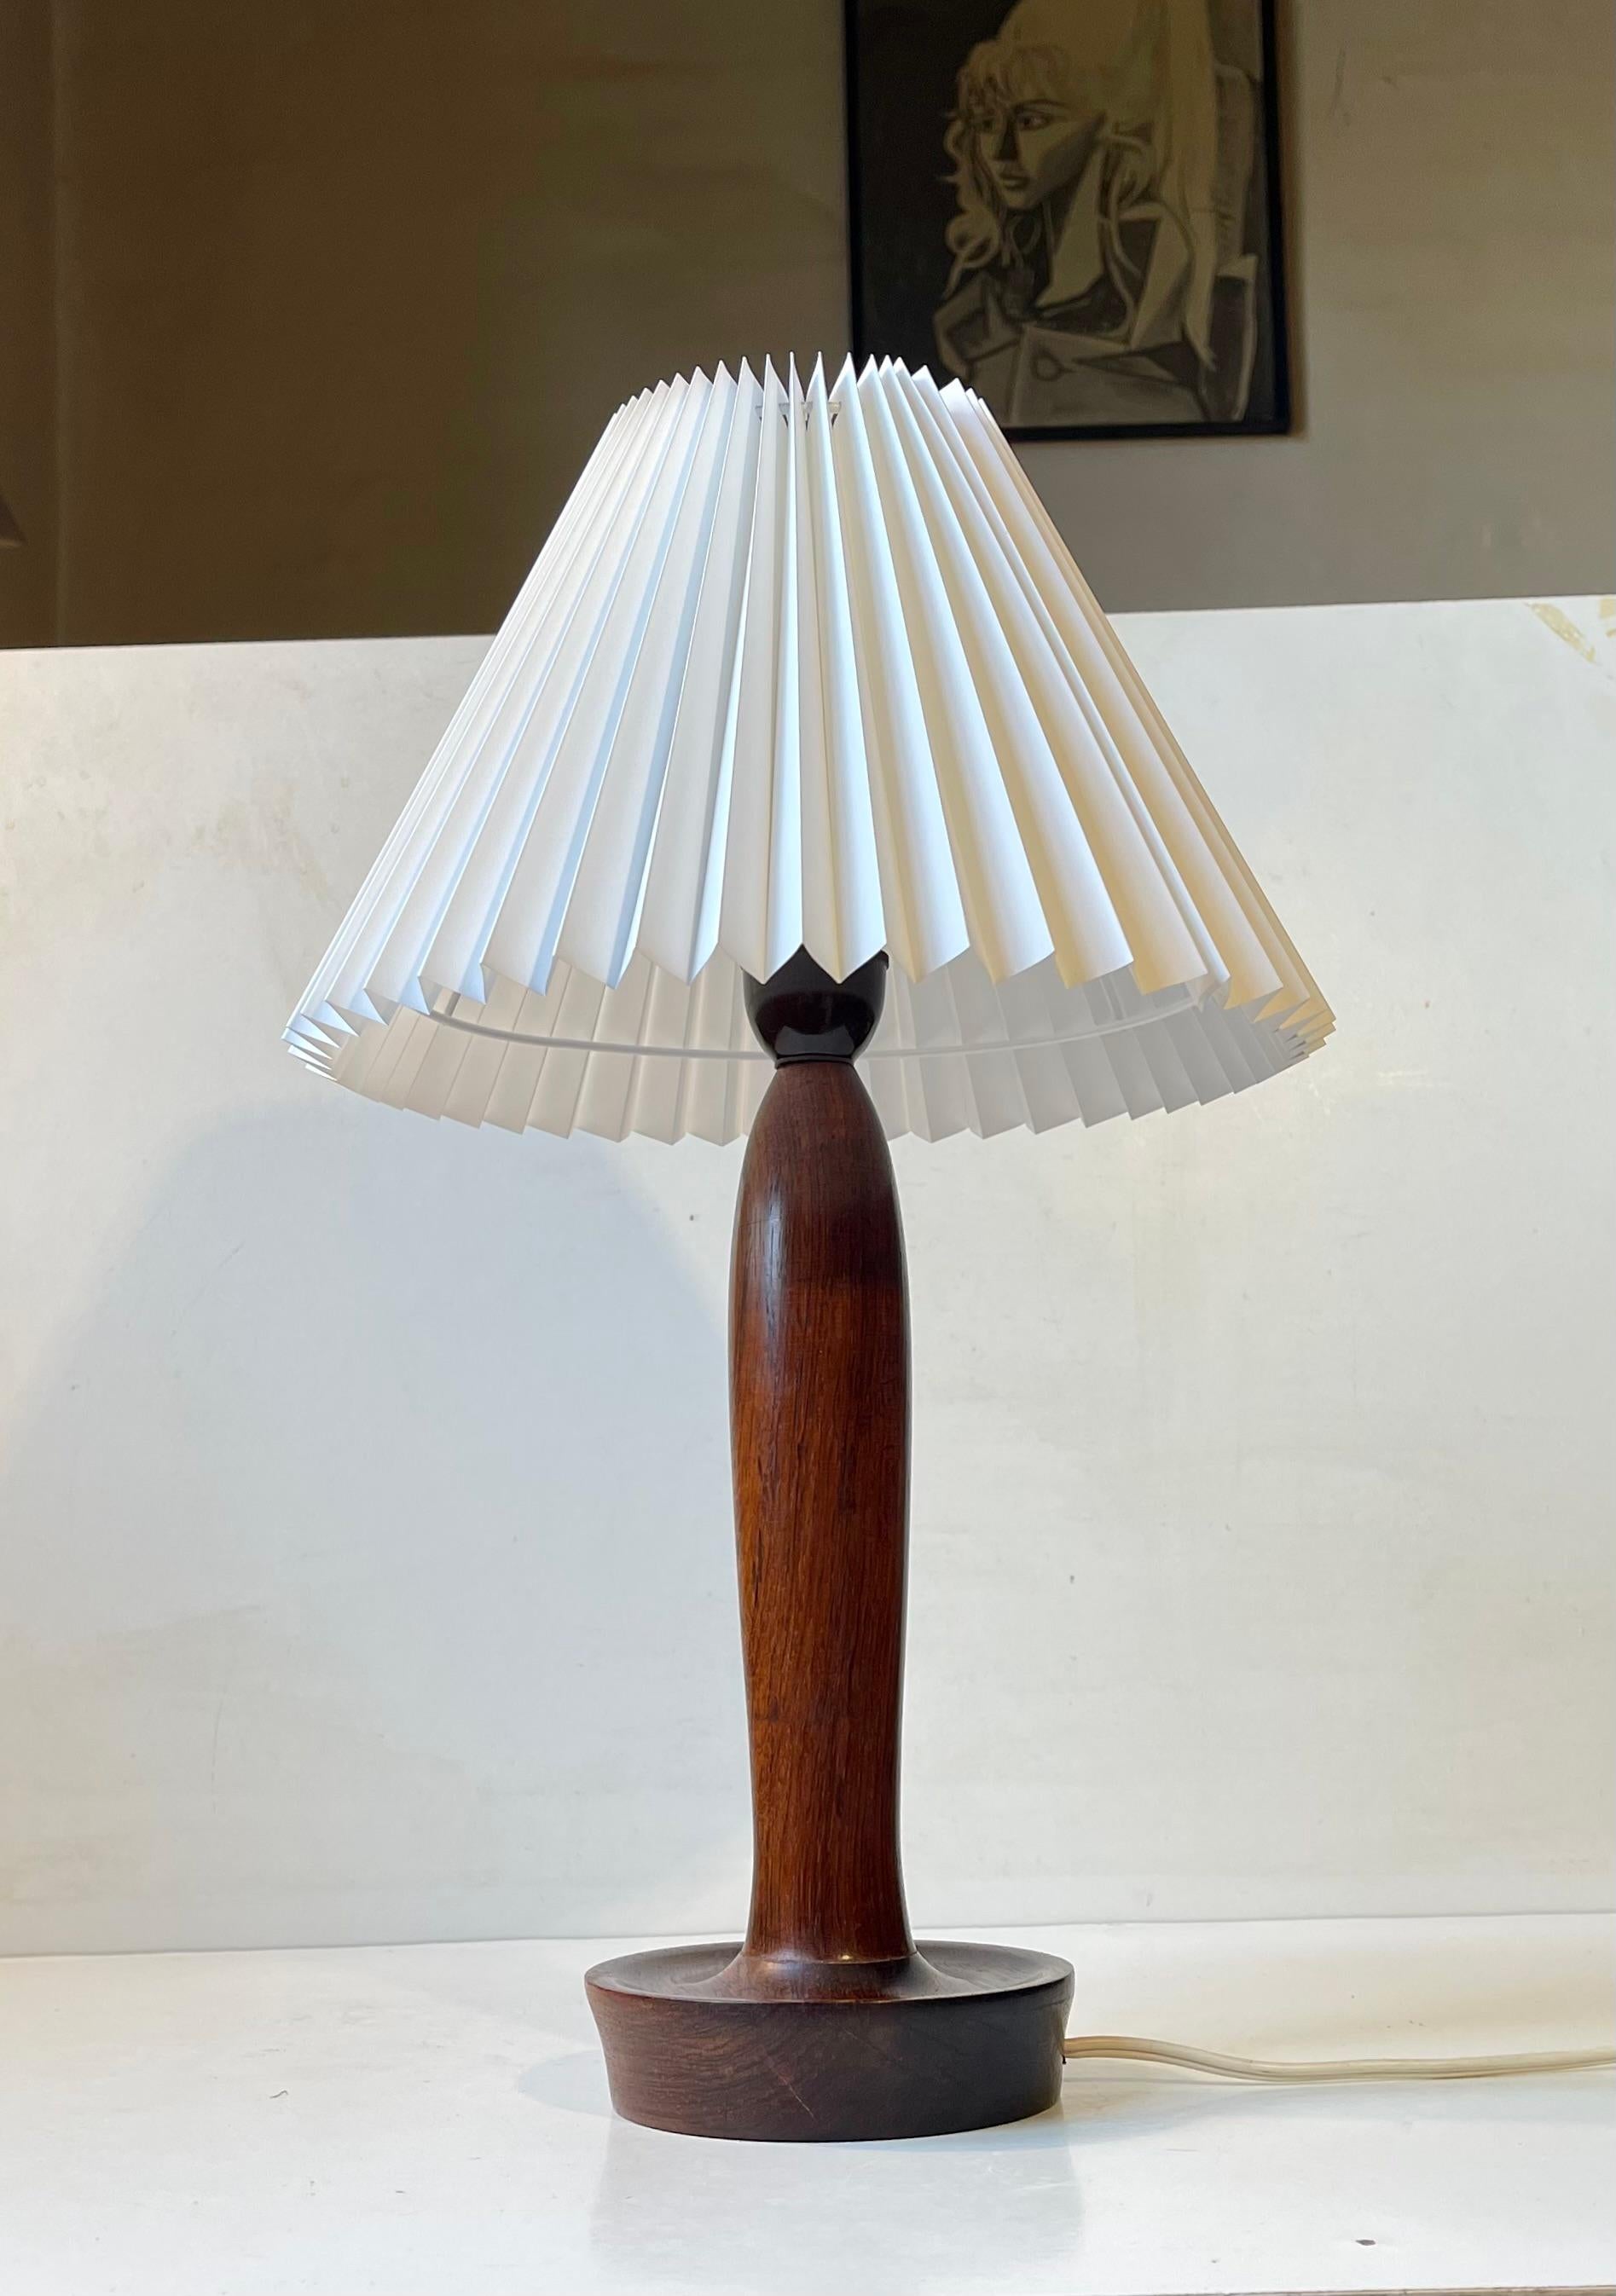 Lampe de table de forme organique en palissandre massif tourné. Elle est dotée d'une douille bakélite d'origine et d'un nouvel abat-jour danois blanc cannelé en acrylique. Il a été fabriqué à Lyfa au Danemark vers 1960 dans un style qui rappelle